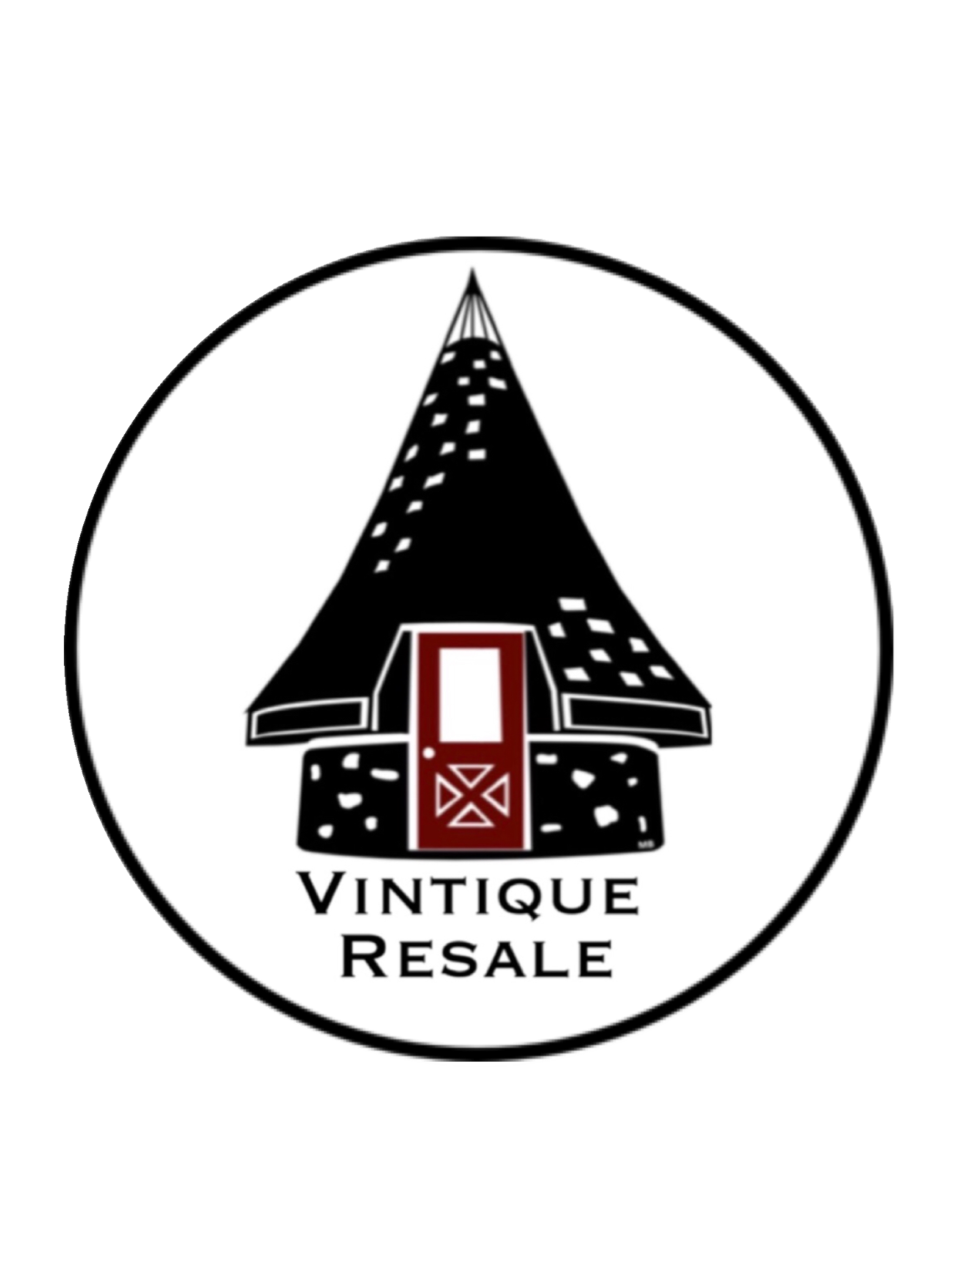 Vintique Resale logo.png